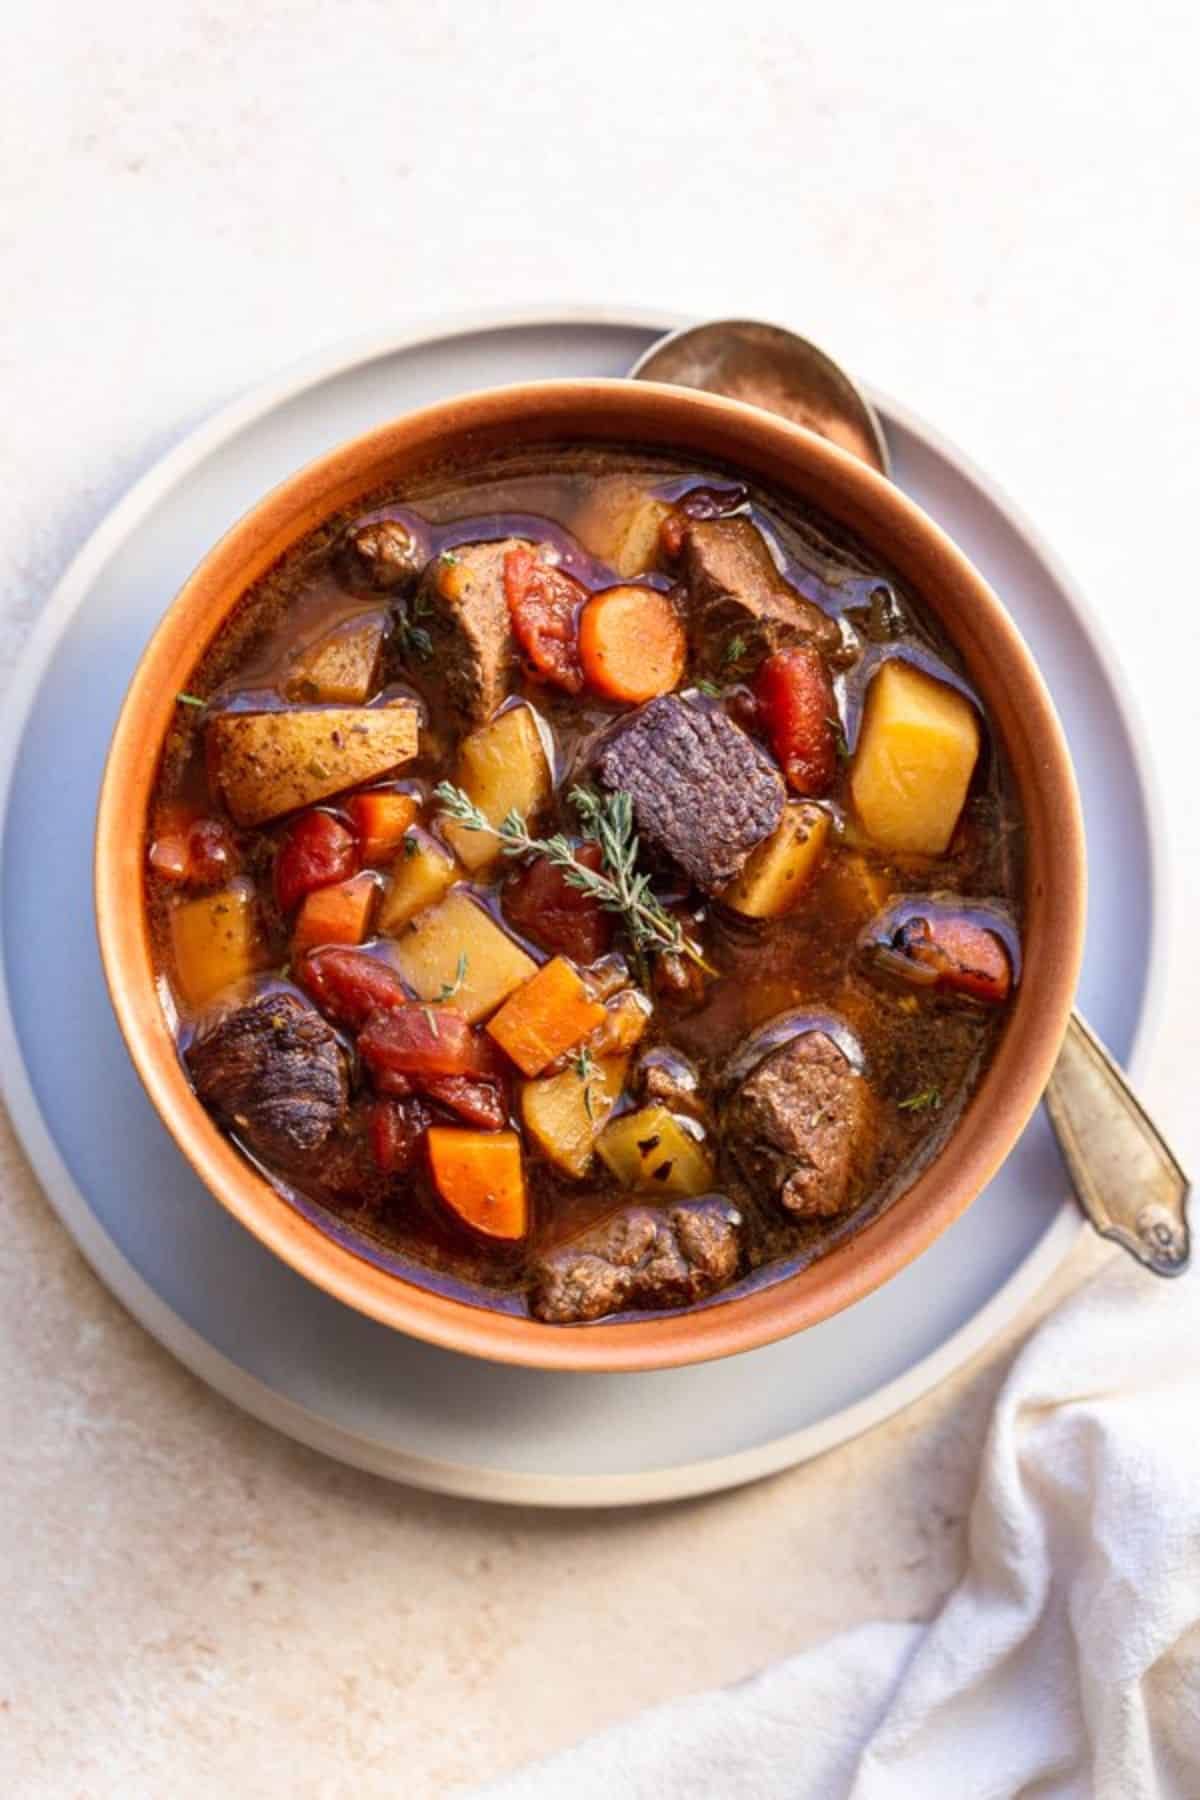 Healthy venison stew in an orange bowl.